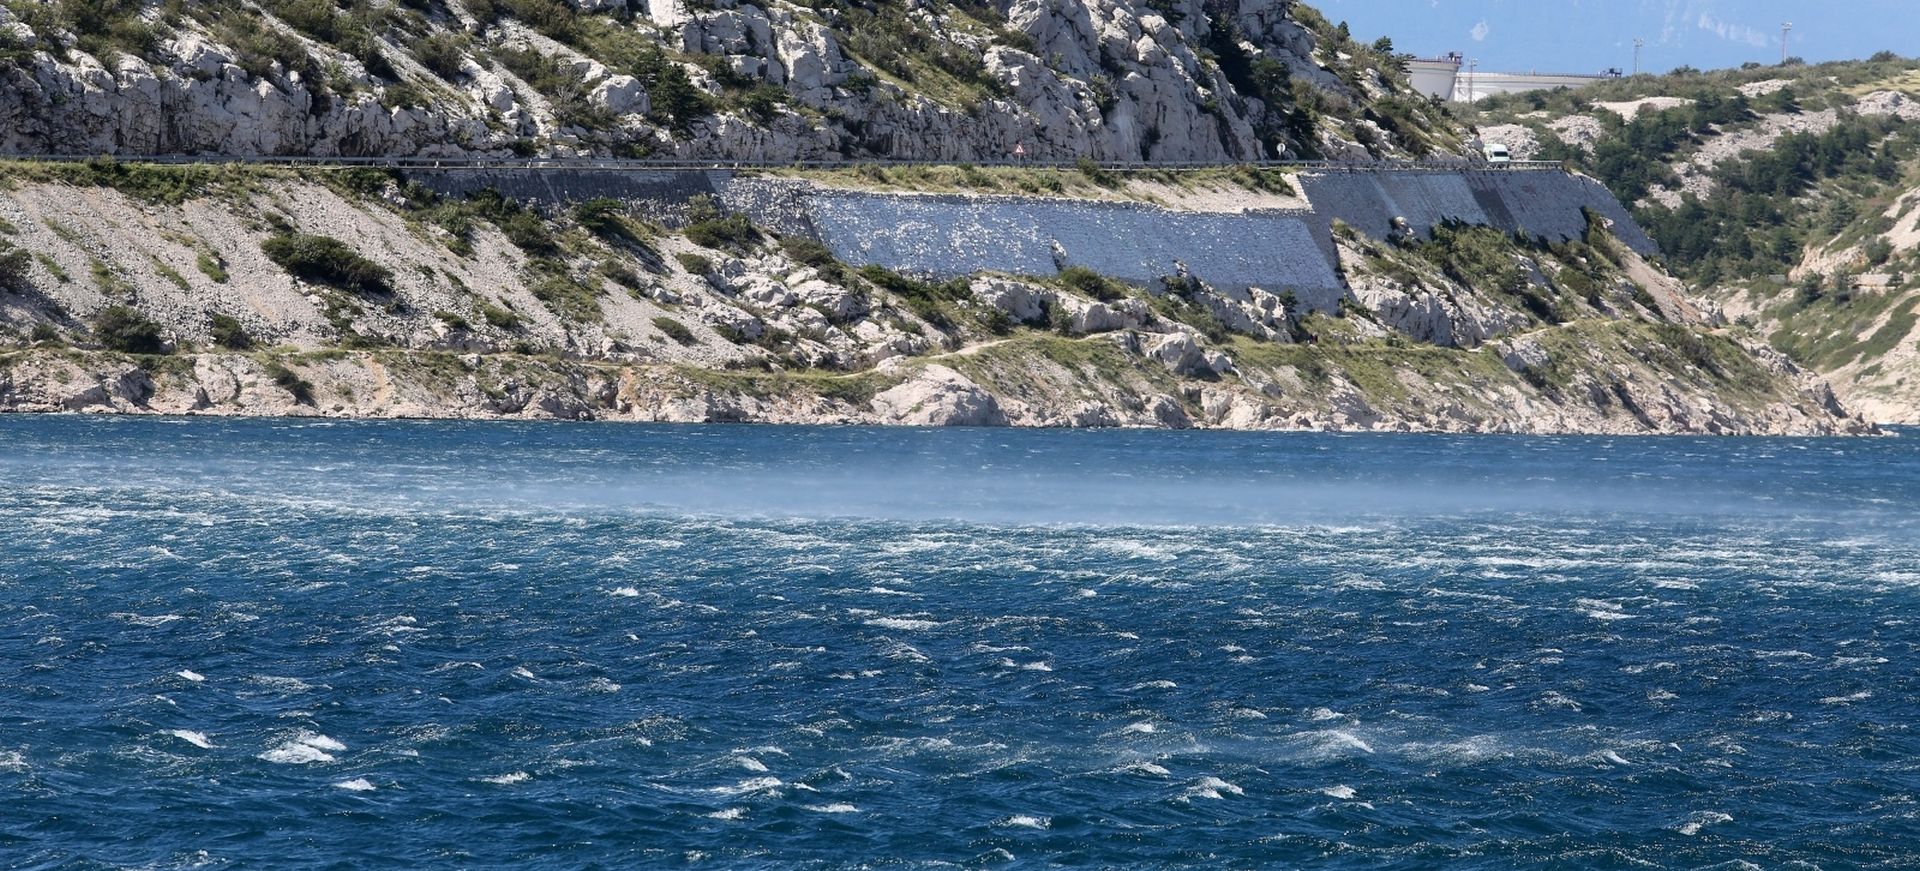 03.09.2019., Bakarac - Olujna bura na moru u Bakarskom zaljevu.
Photo:Goran Kovacic/PIXSELL